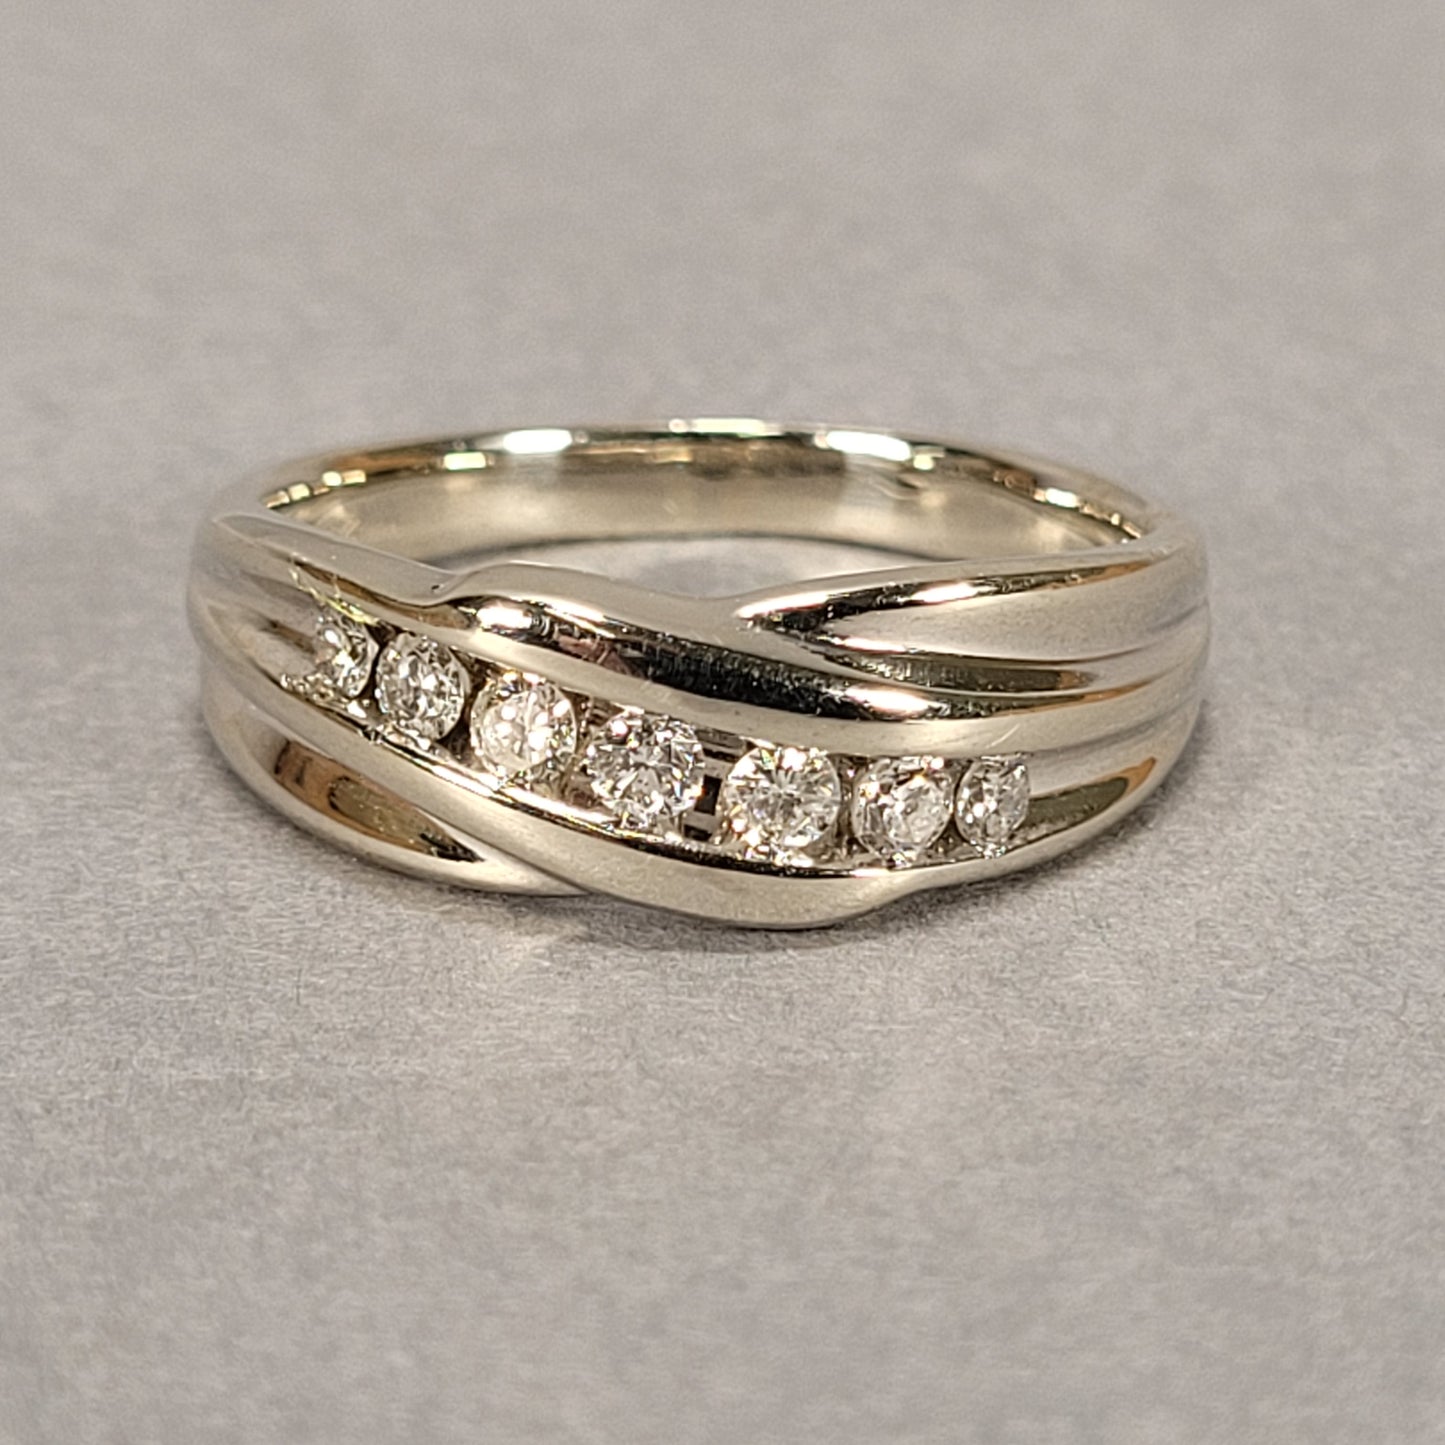 Men's 14k White Gold Ring With 7 Diamonds 9.3g